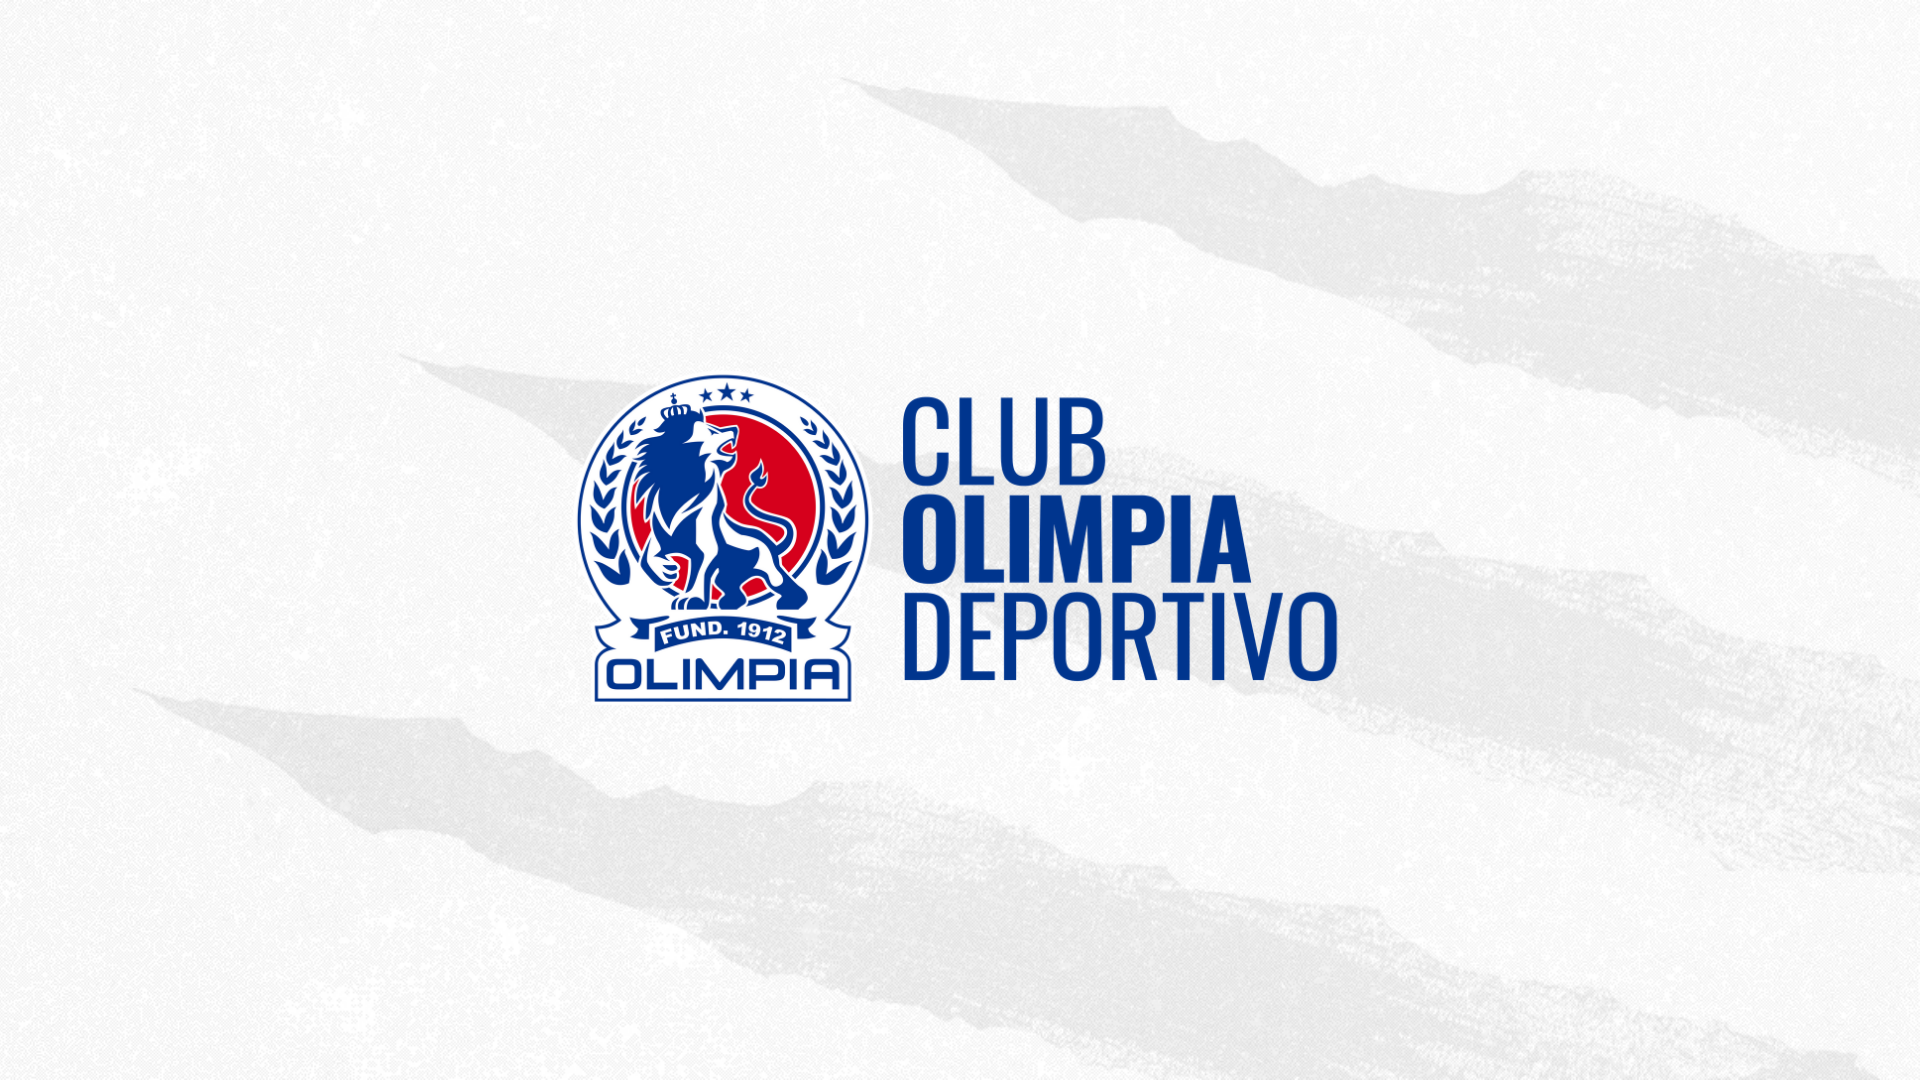 Club Olimpia Deportivo – Wikipédia, a enciclopédia livre